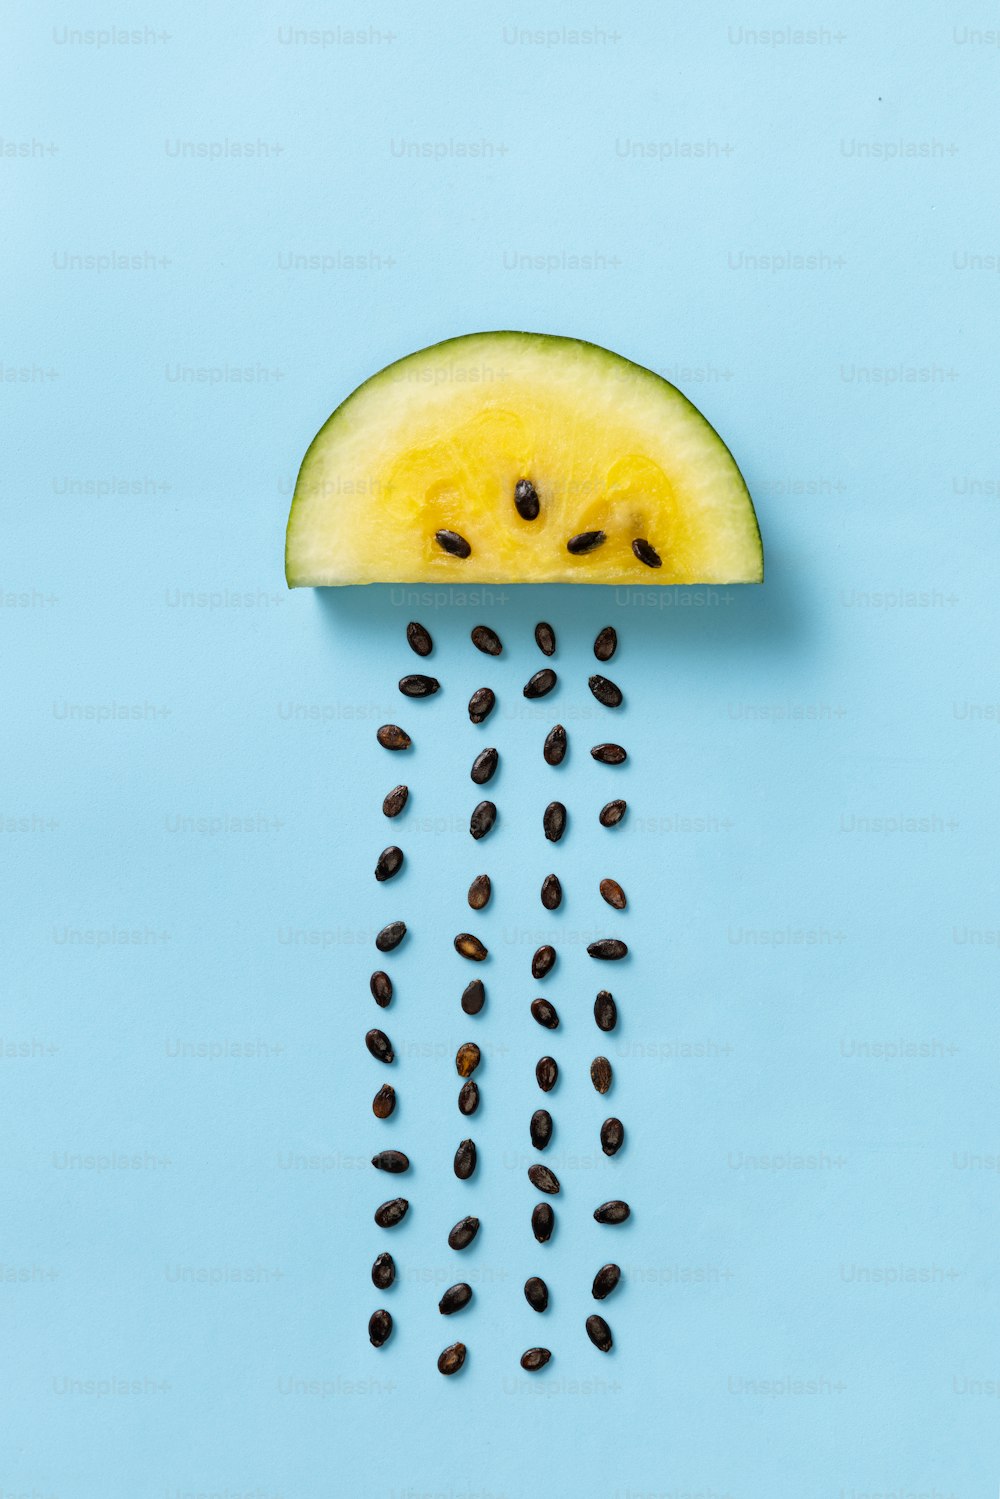 Diseño creativo con rodajas de mango amarillo o sandía de piña con semillas que llueven aisladas sobre fondo azul. Plano laico. Concepto meteorológico. Arte, sabor, salud, anuncio